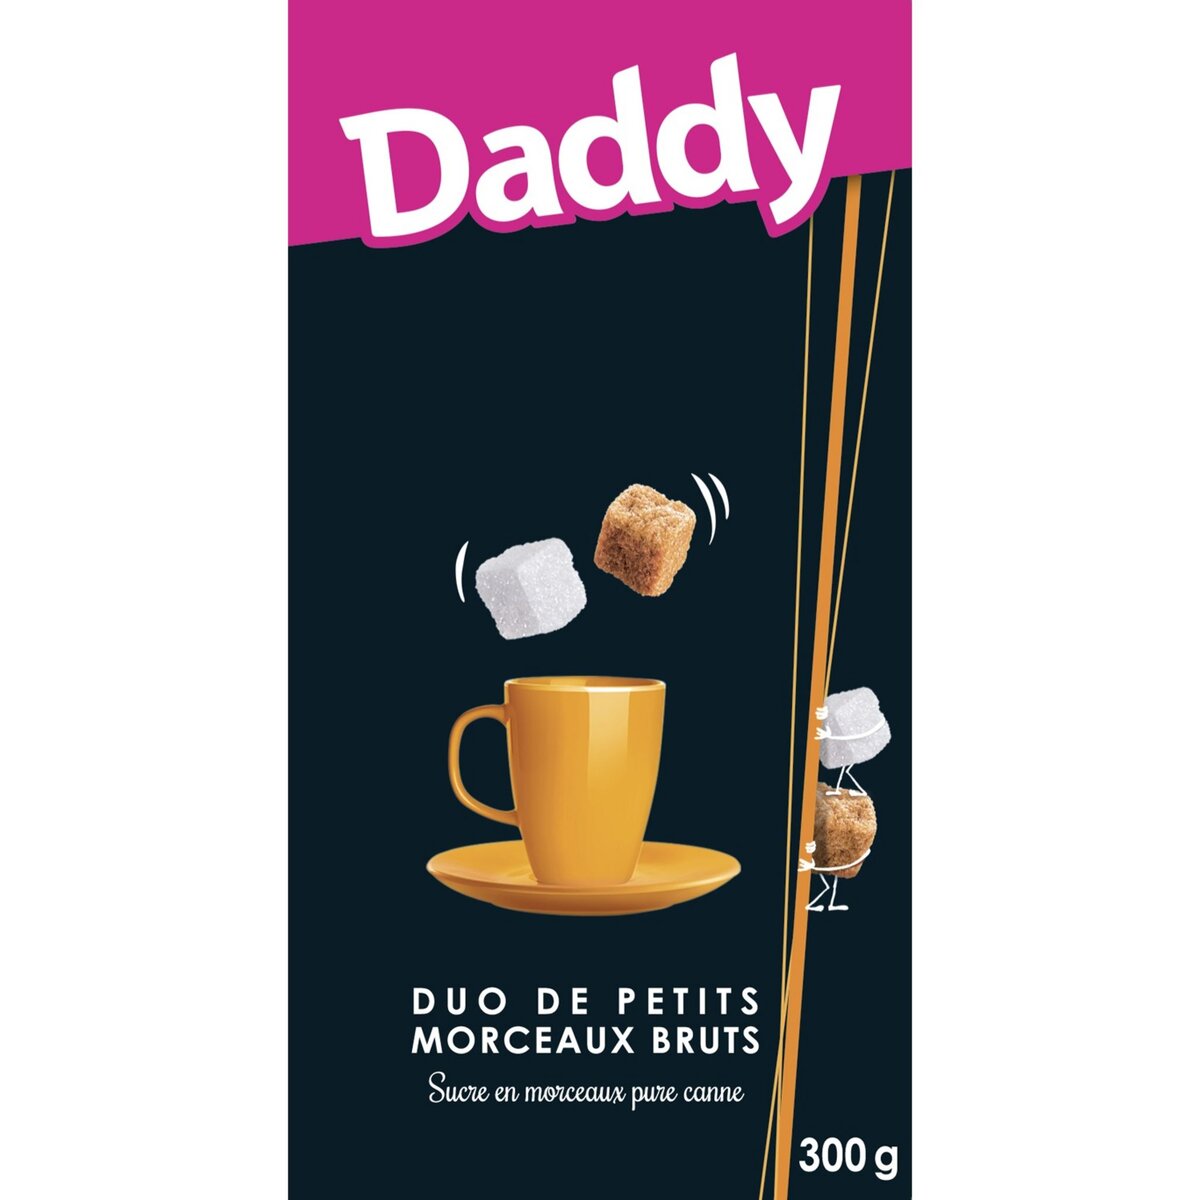 DADDY Duos de petits morceaux de sucre bruts pure canne 300g